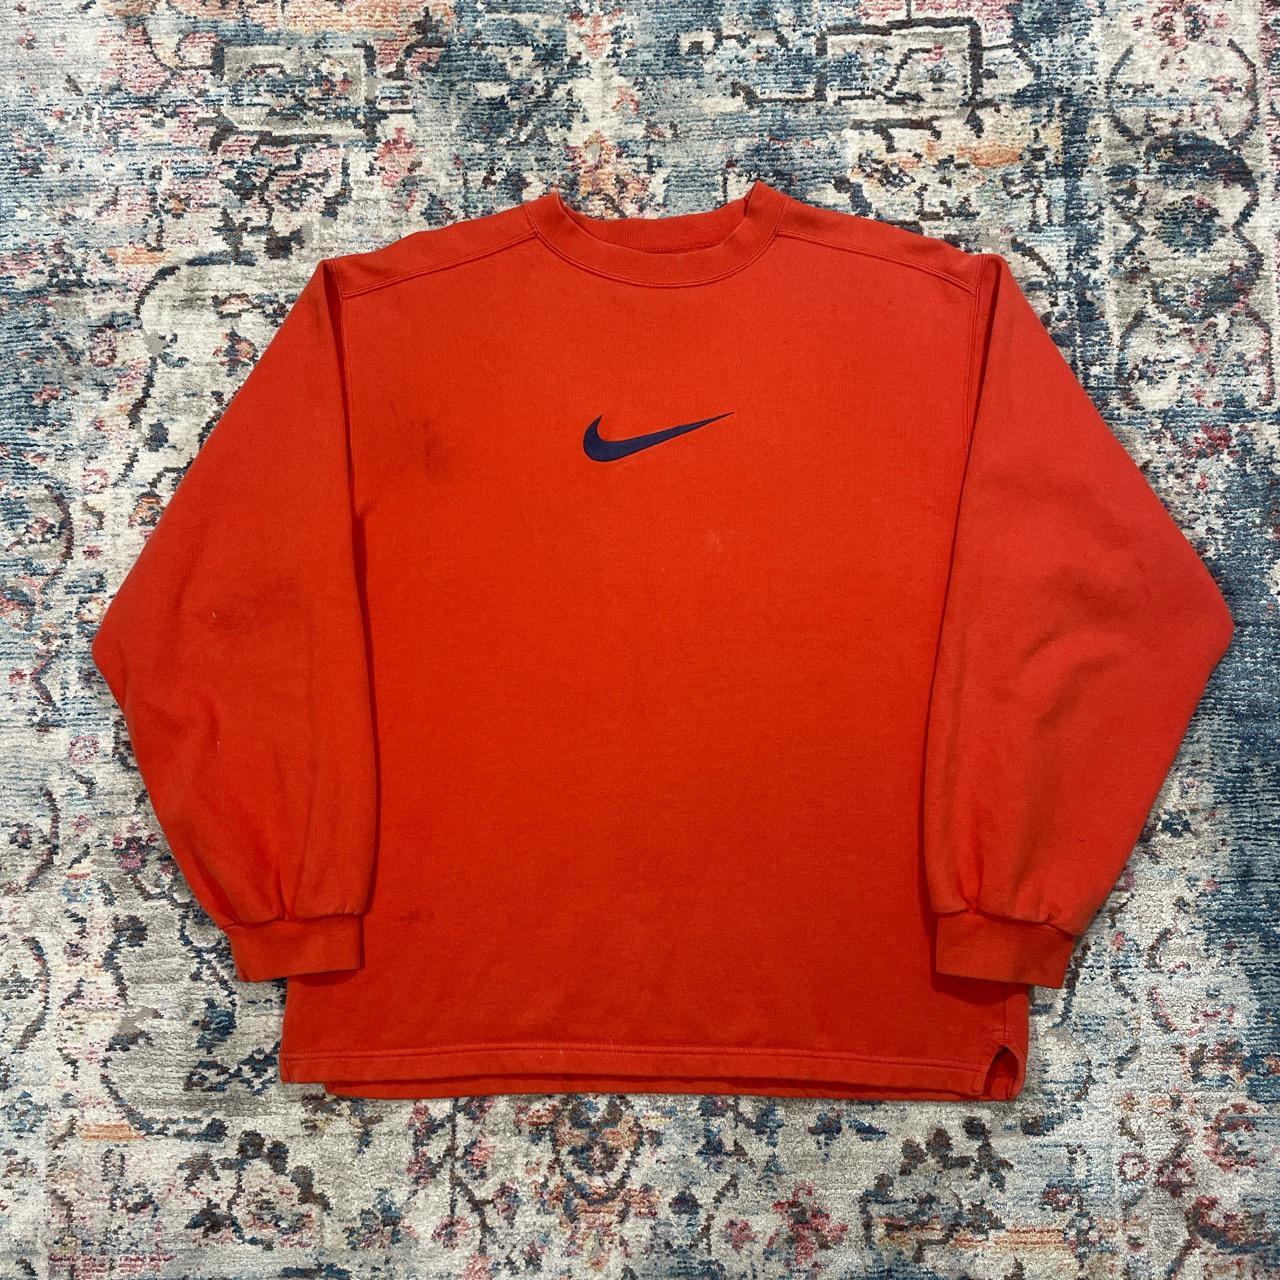 Vintage Nike Orange Sweatshirt